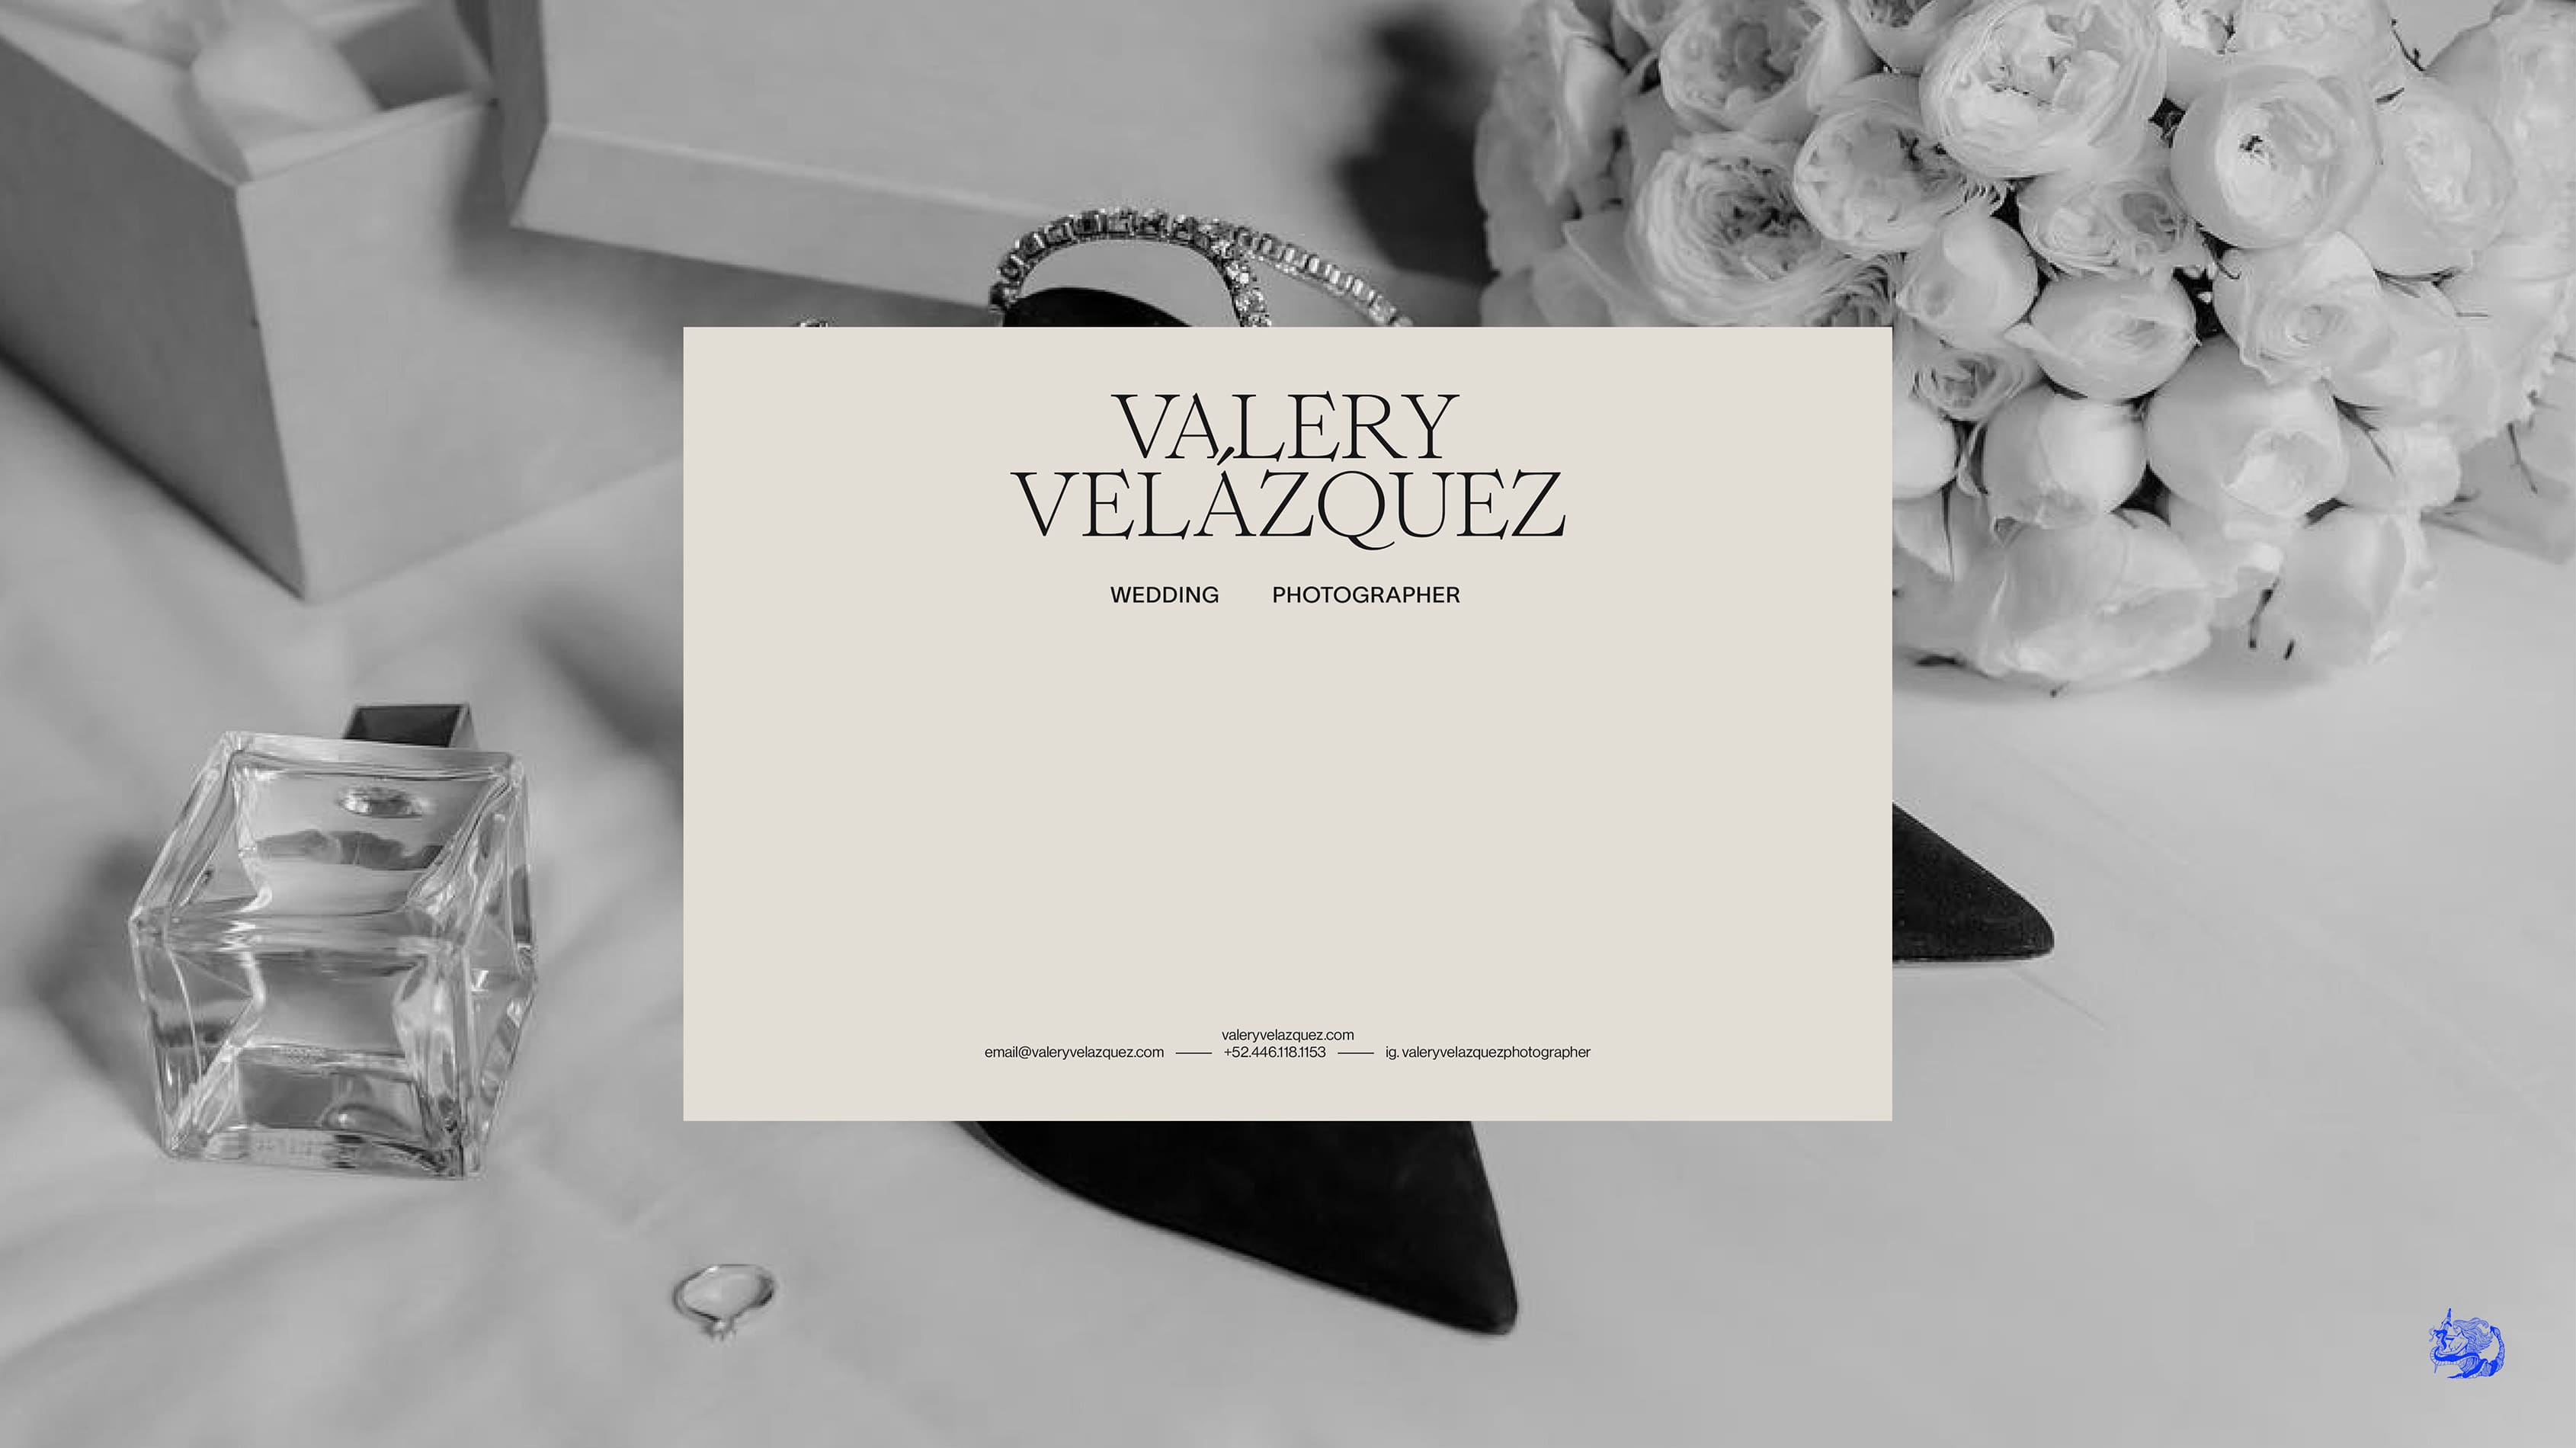 Valery Velazquez